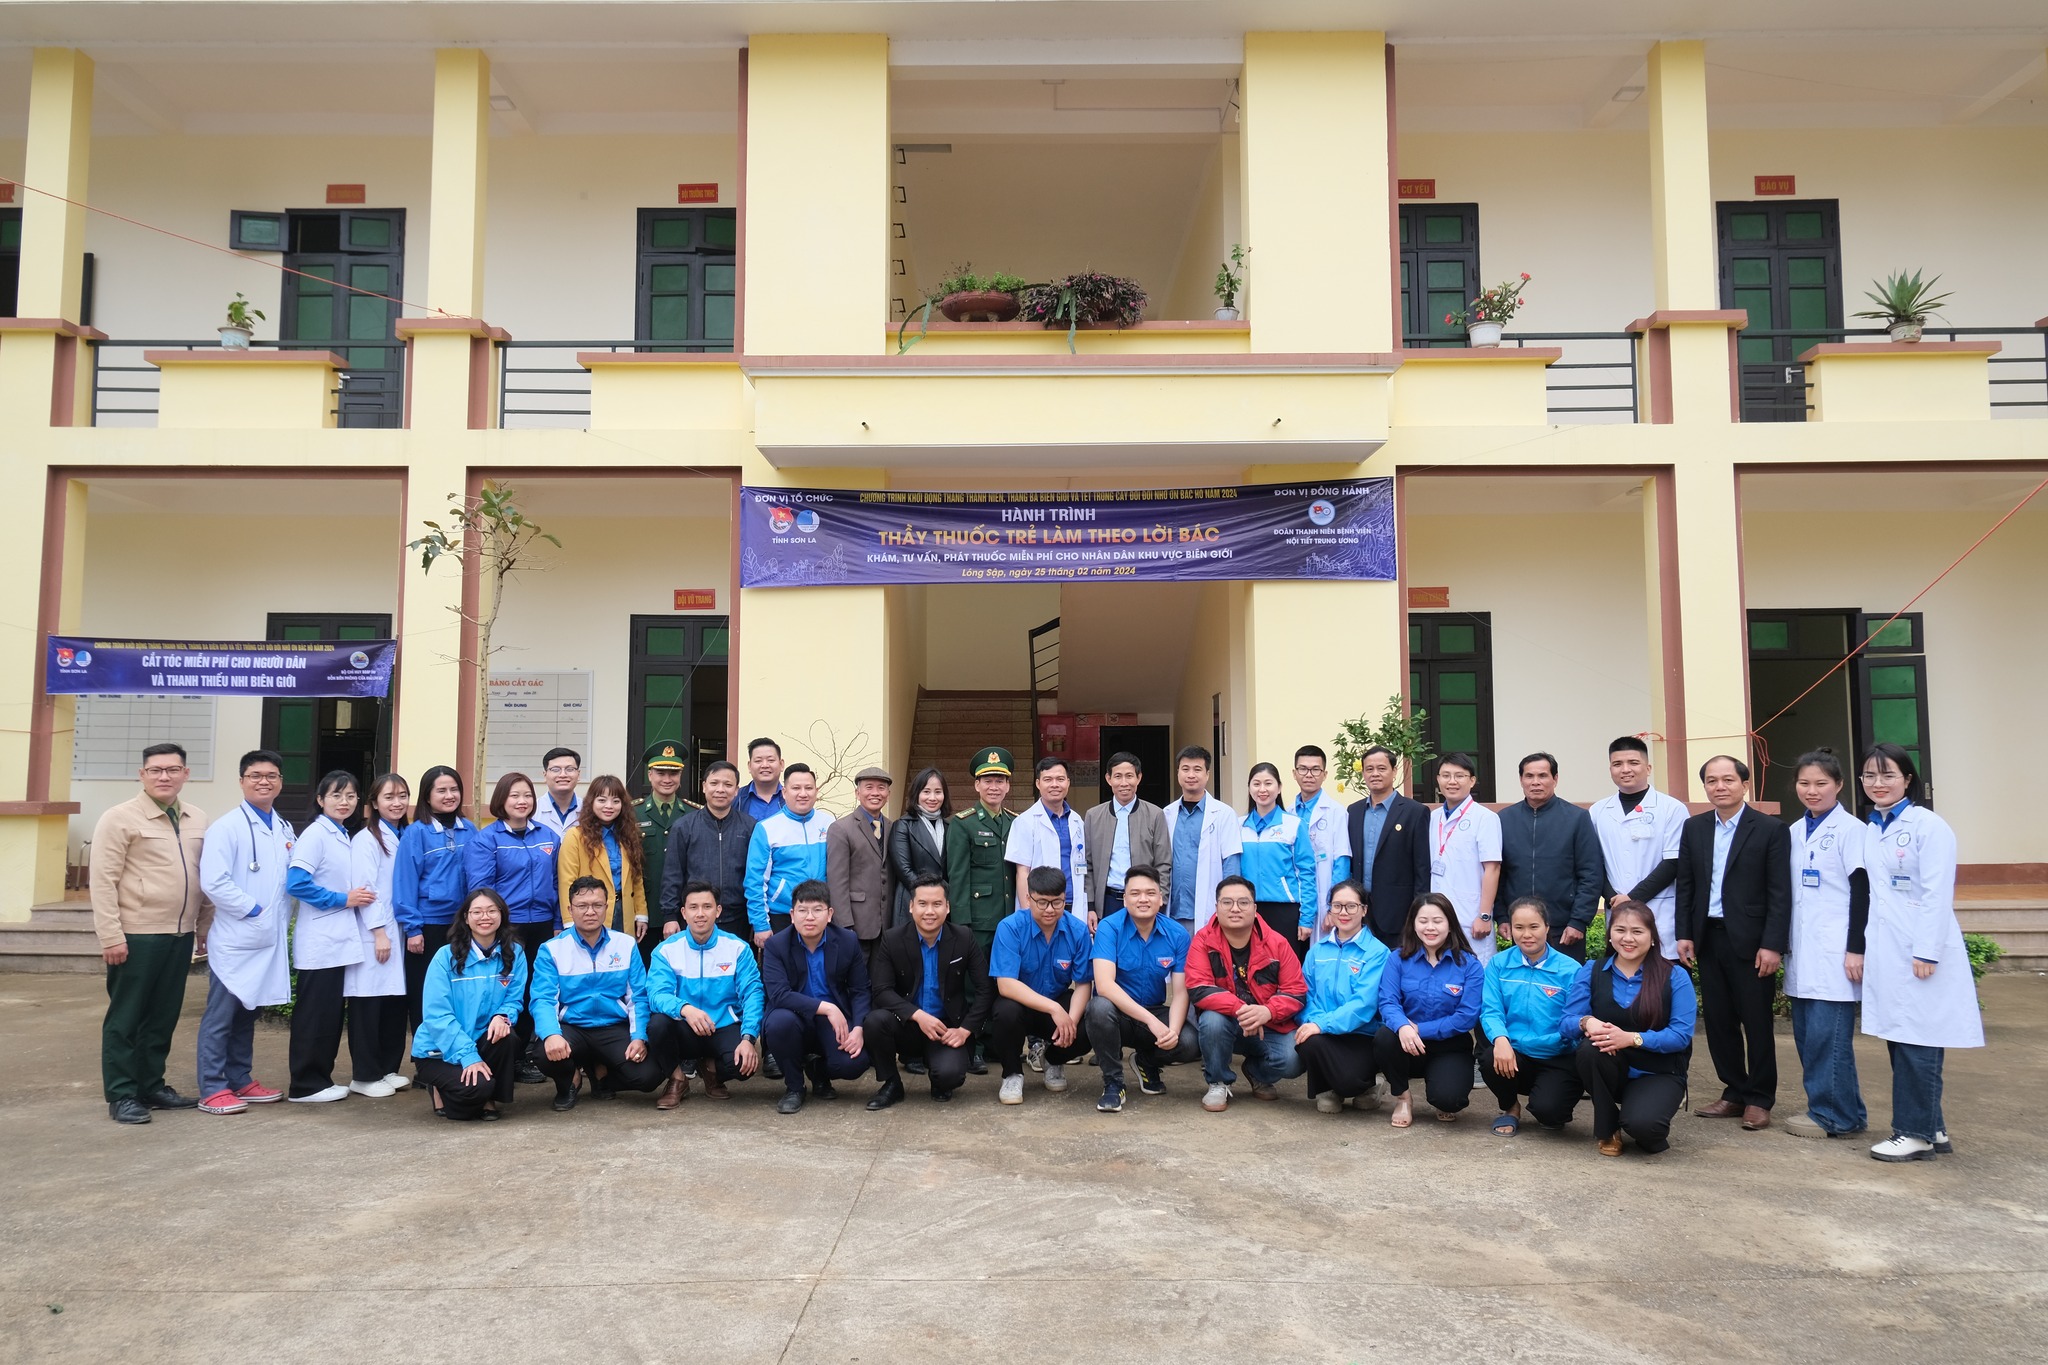 Đoàn thanh niên Bệnh viện Nội tiết Trung ương thăm khám cấp phát thuốc miễn phí cho người dân tại xã Lóng Sập, Sơn La